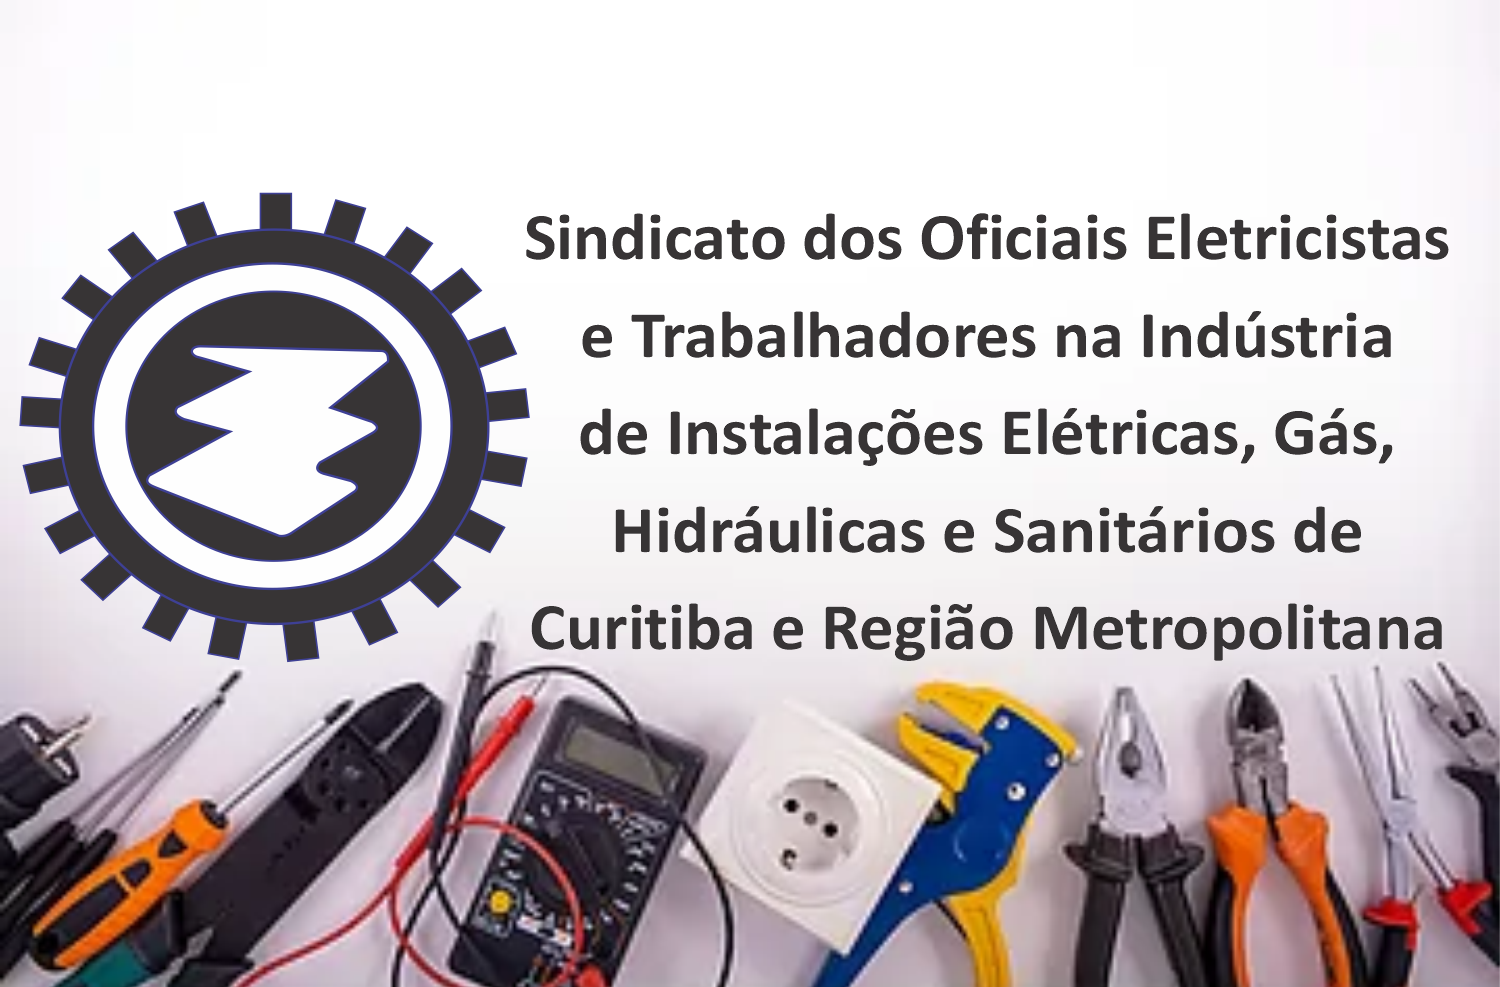 Sindicato dos Oficiais Eletricistas e Trabalhadores na Indústria de Instalações Elétricas, Gás, Hidráulicas e Sanitários de Curitiba e Região Metropolitana